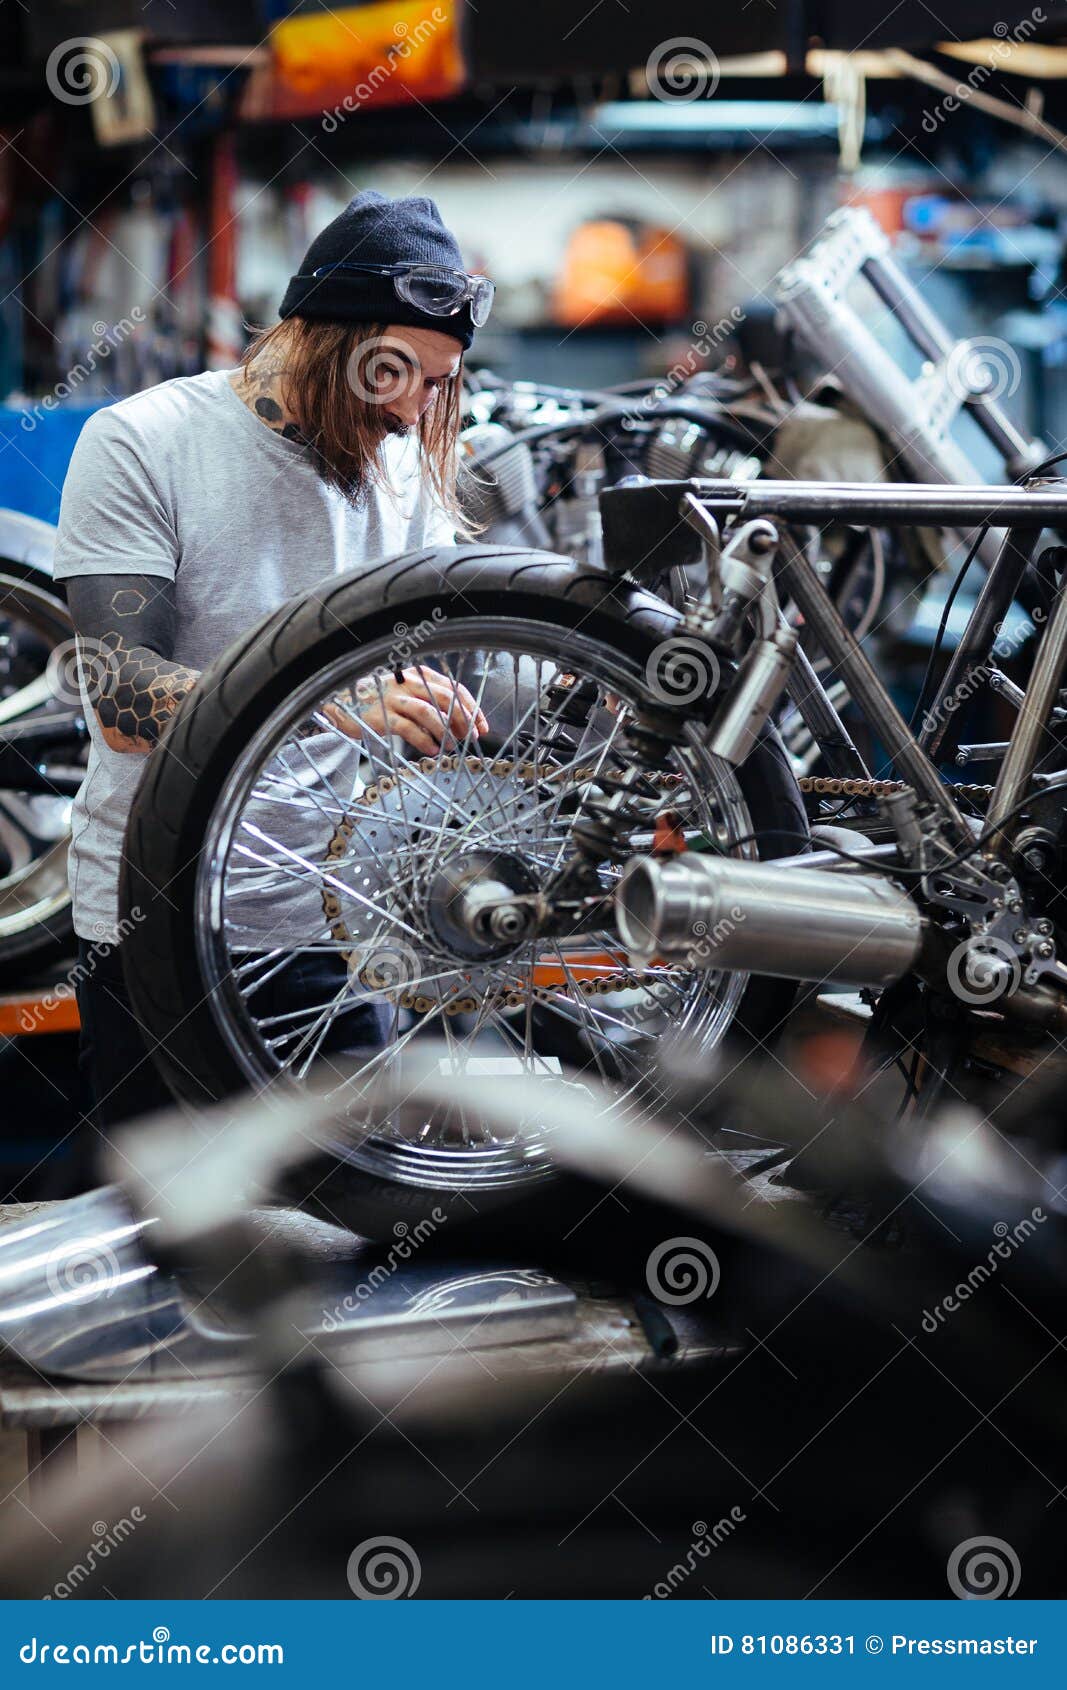 Custom-bike repair stock image. Image of wheel, repair - 81086331